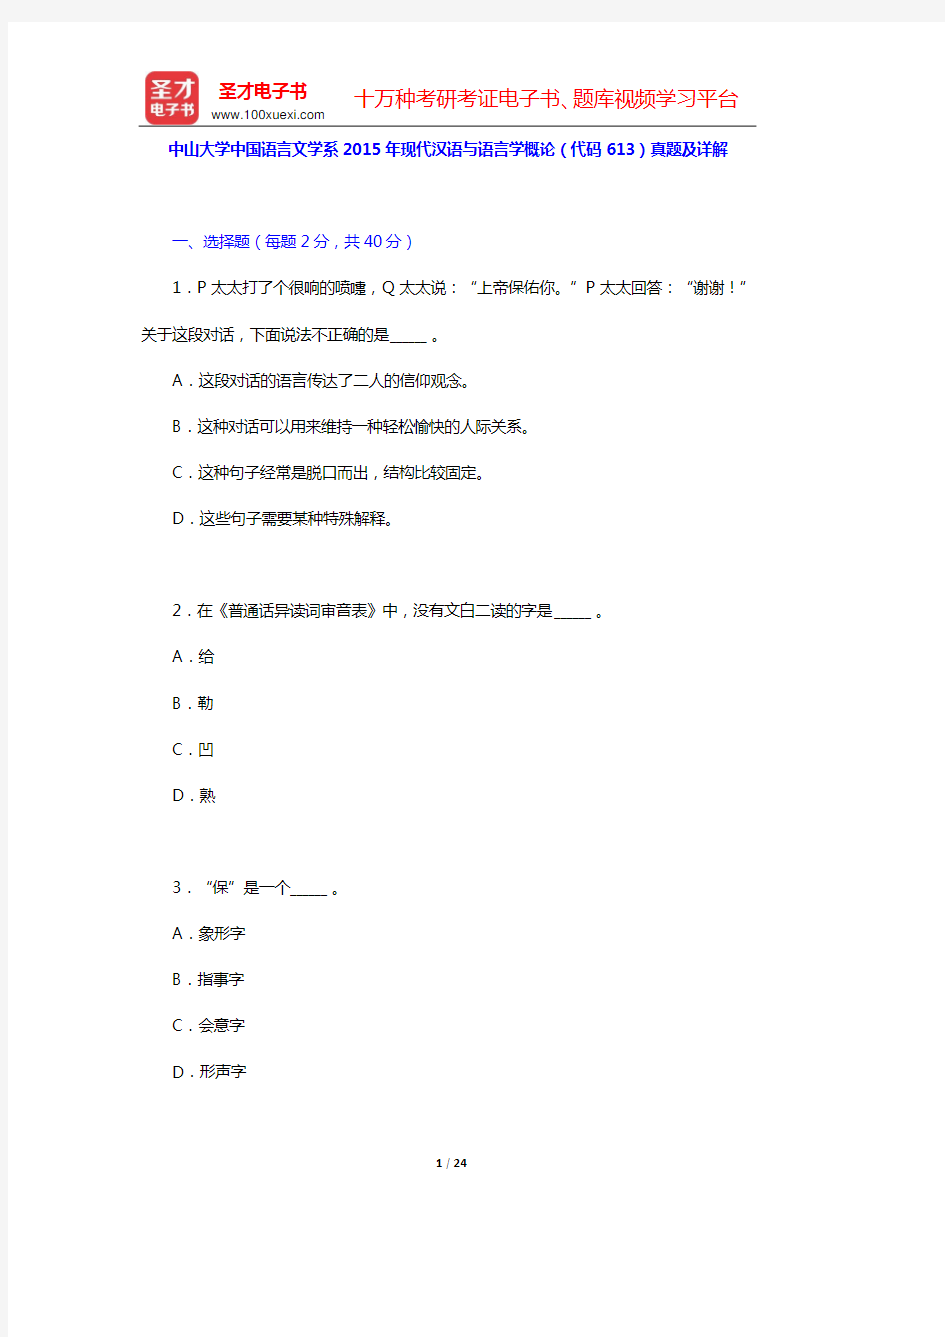 中山大学中国语言文学系2015年现代汉语与语言学概论(代码613)真题及详解【圣才出品】